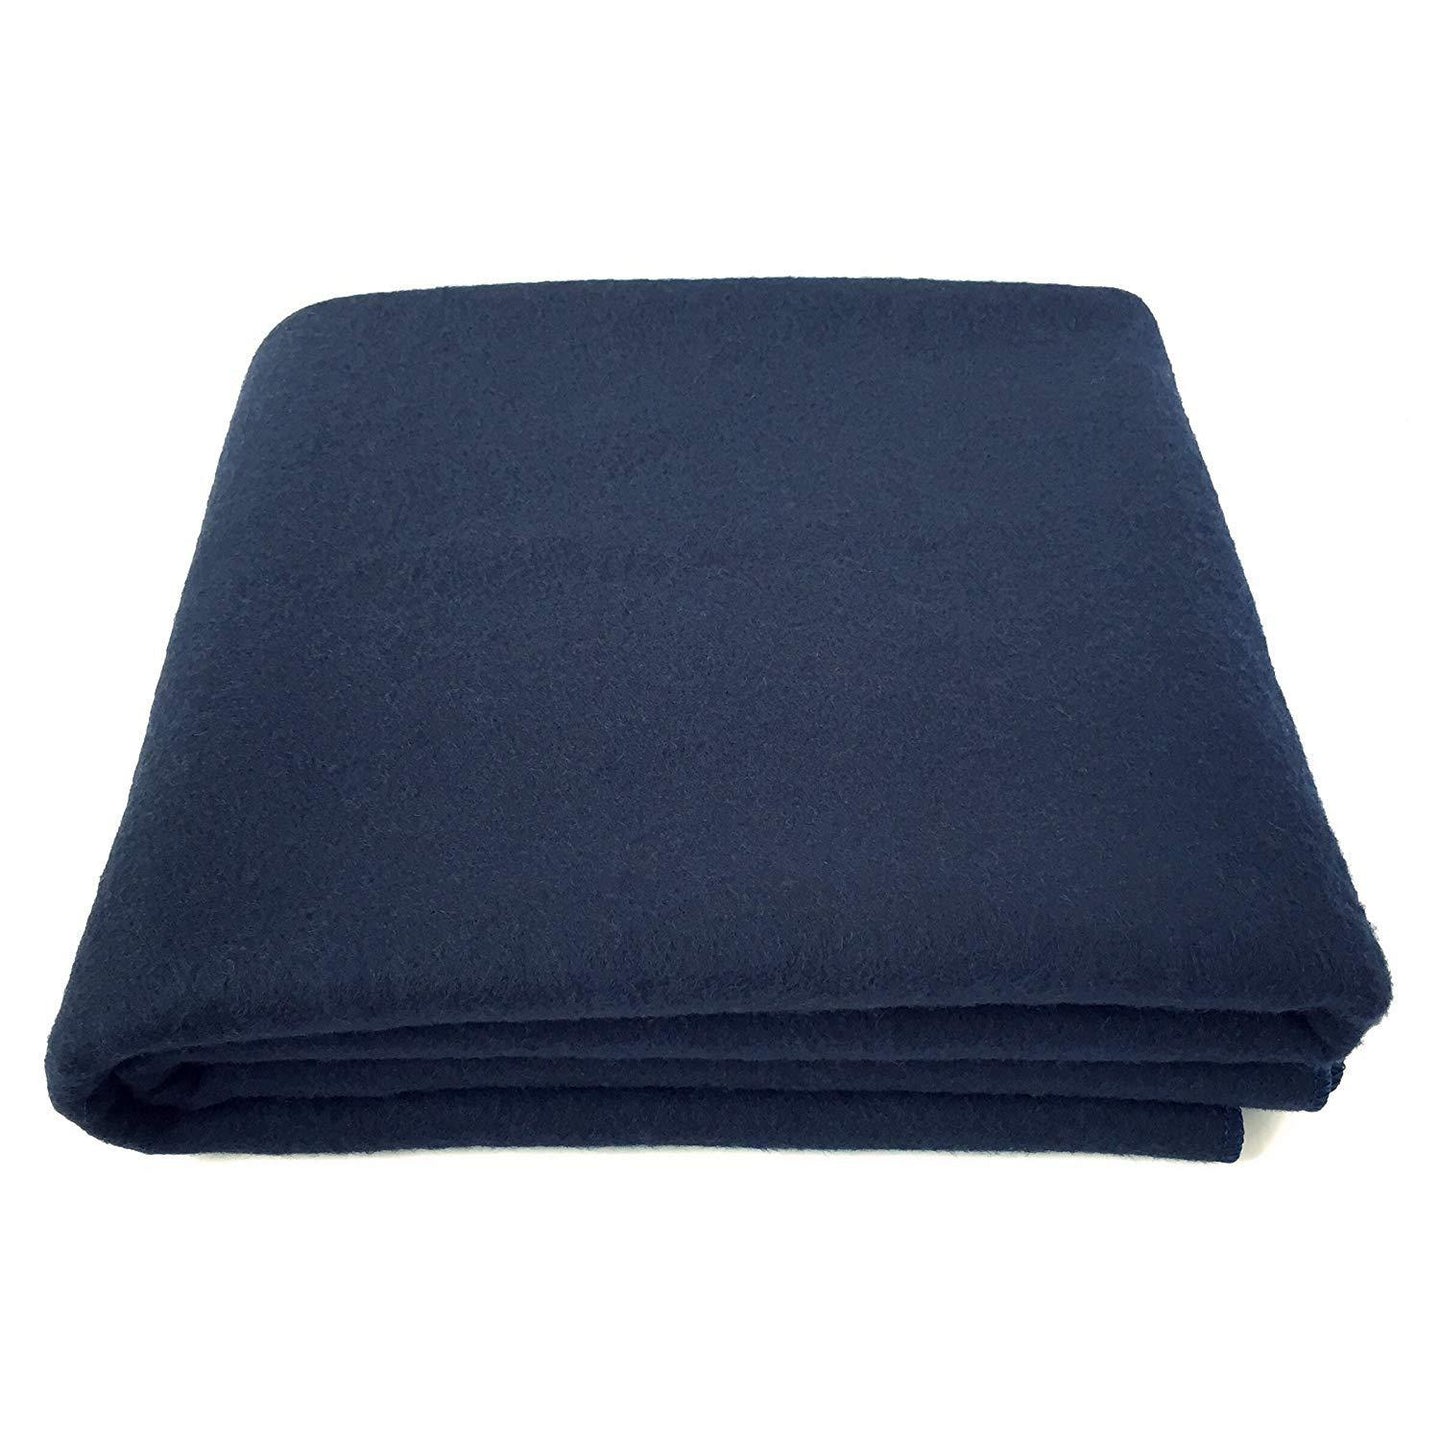 Romano nx Wool & Wool Blend 1200 TC Blanket romanonx.com Dark Blue 